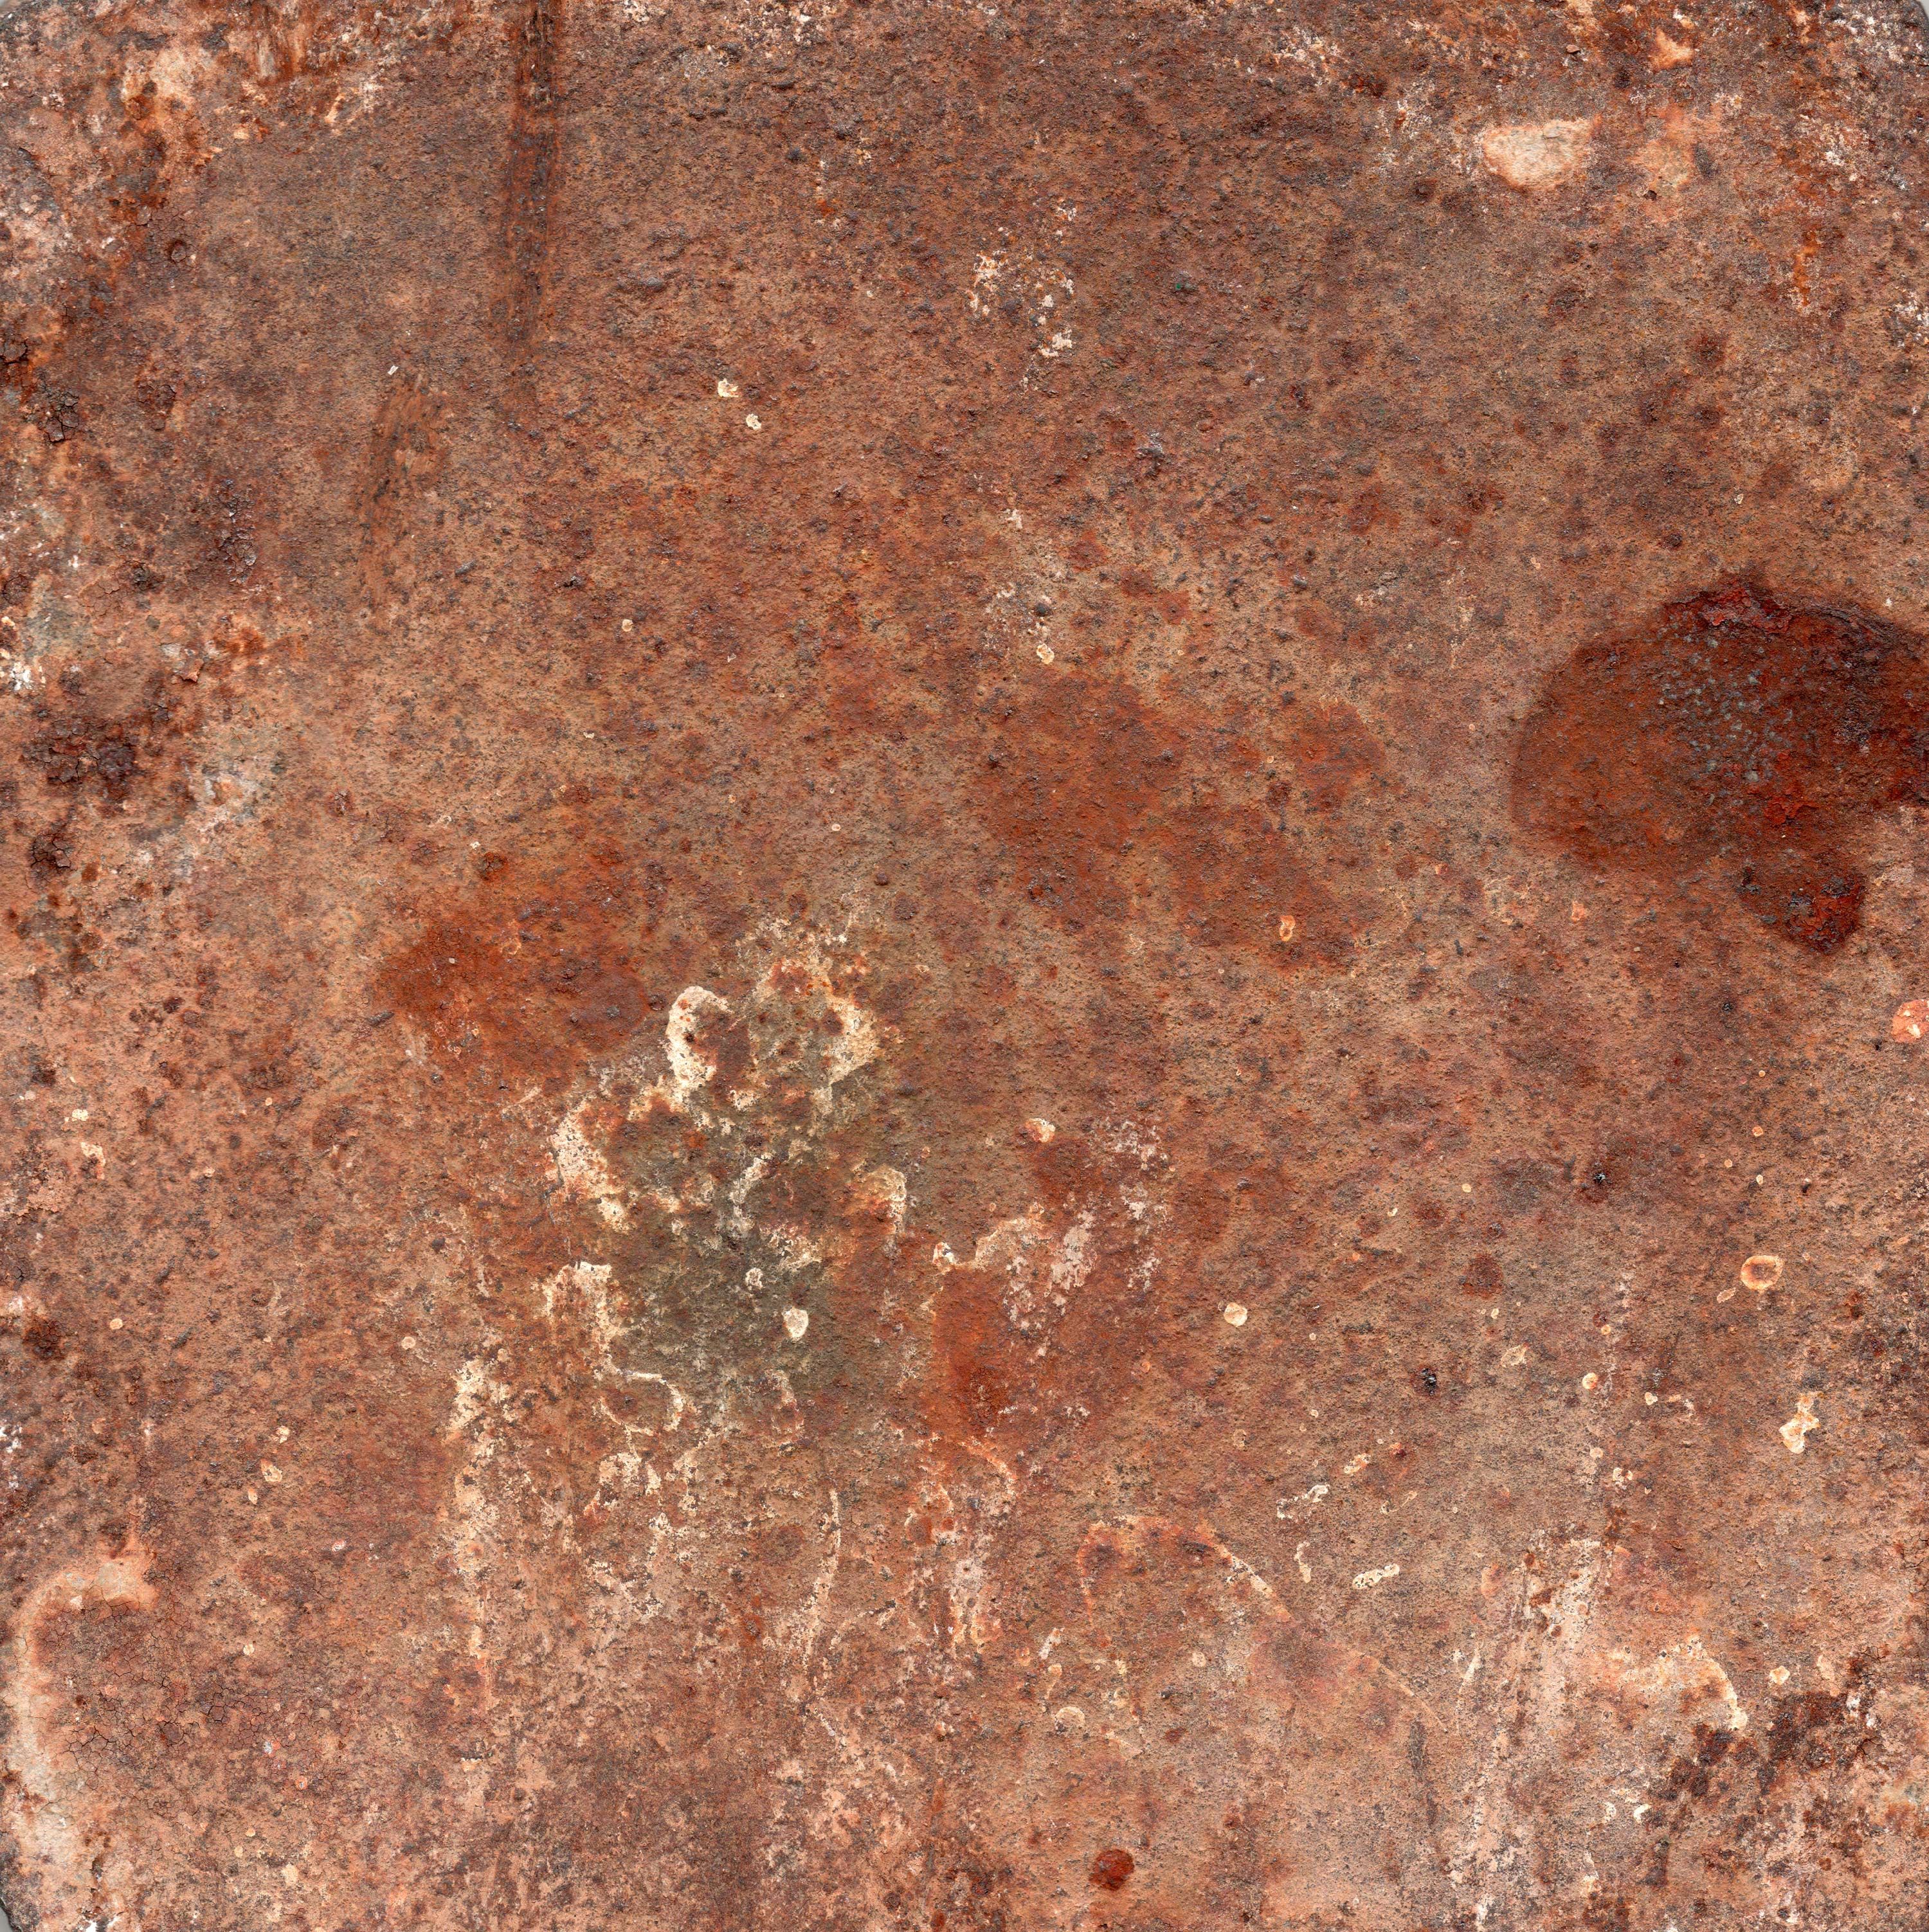 Pin by Ben Cloward on Materials Metal Rust | Pinterest | Rust